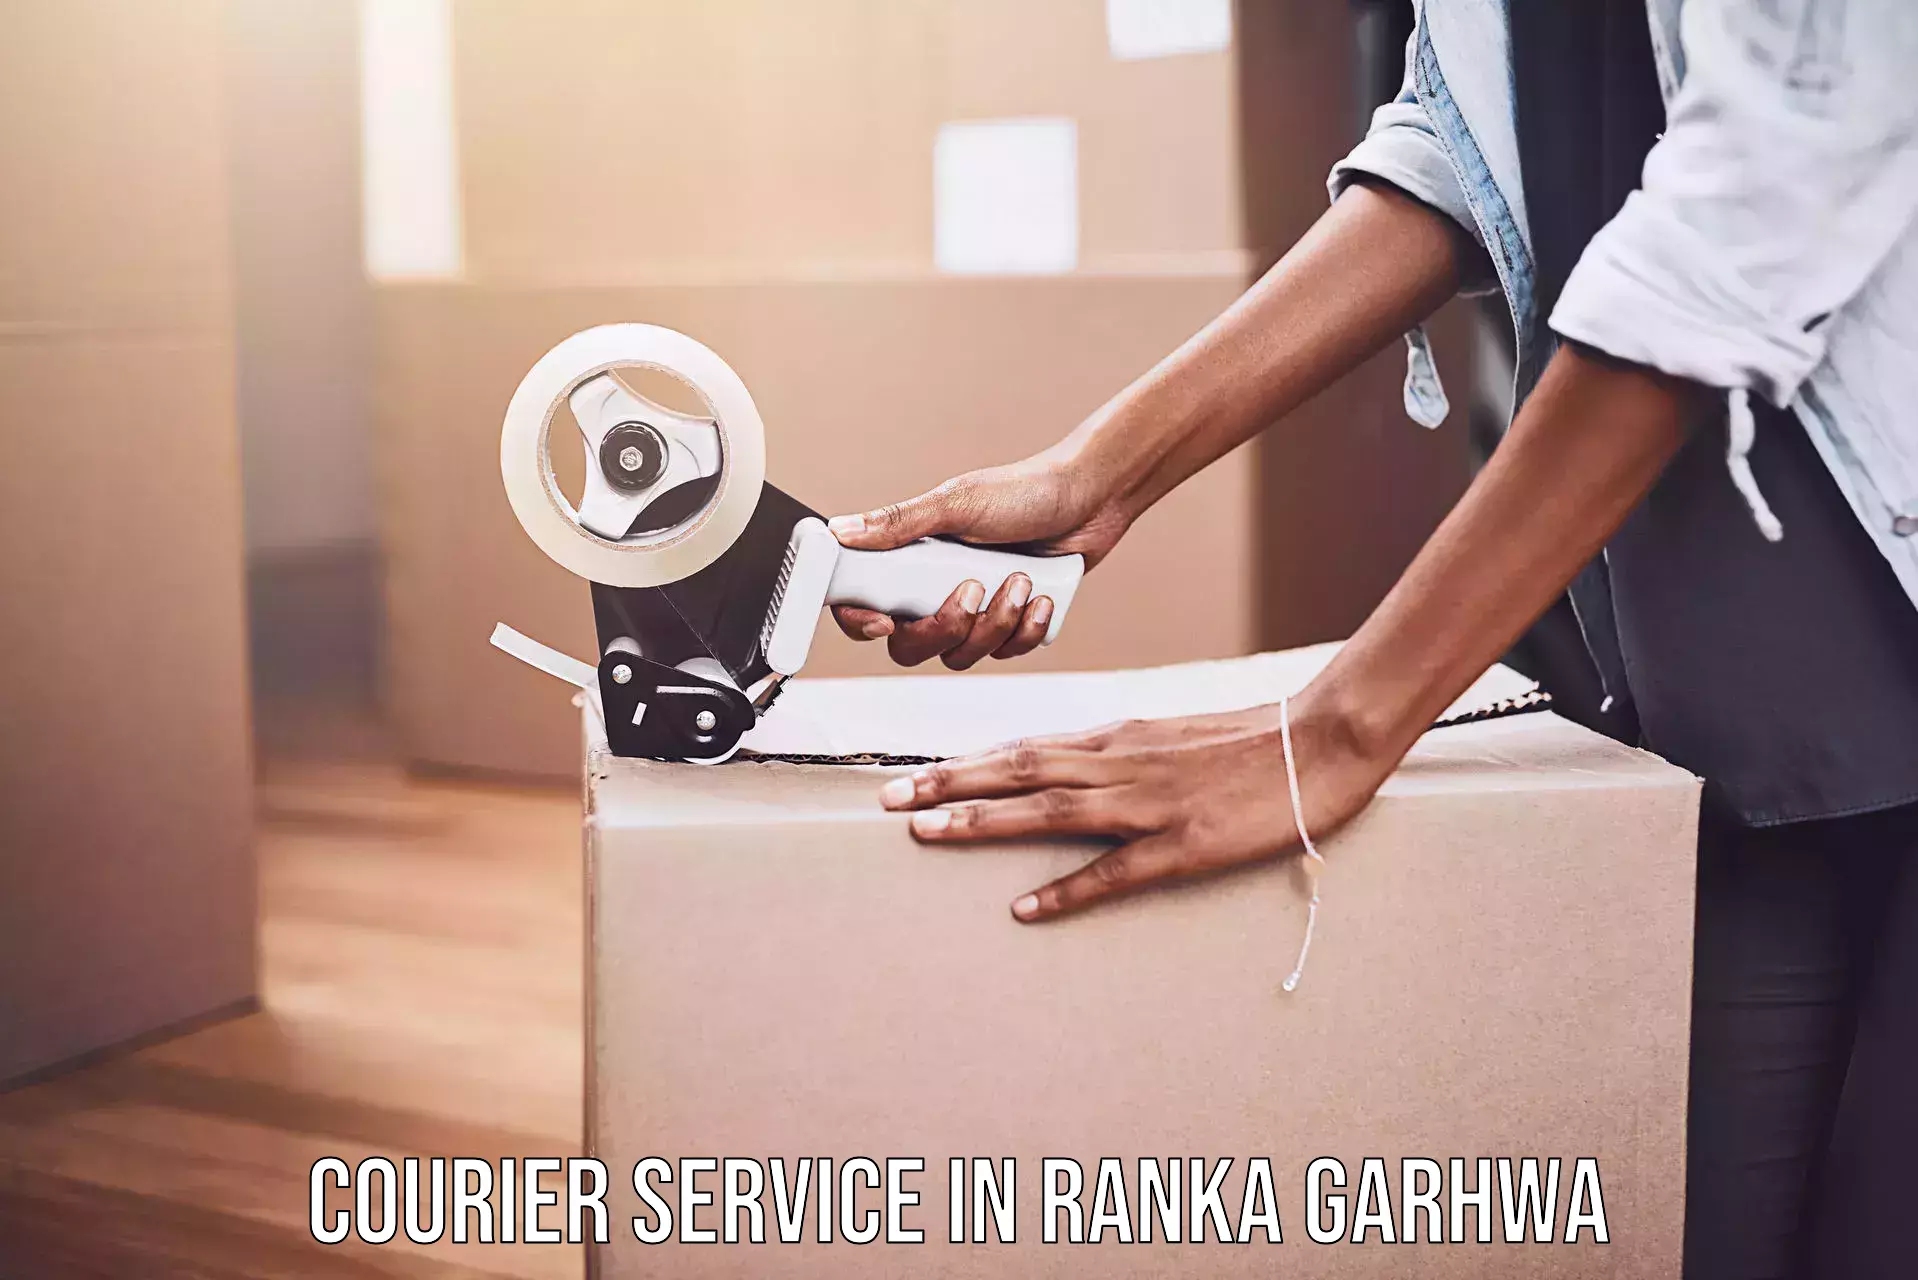 High-priority parcel service in Ranka Garhwa